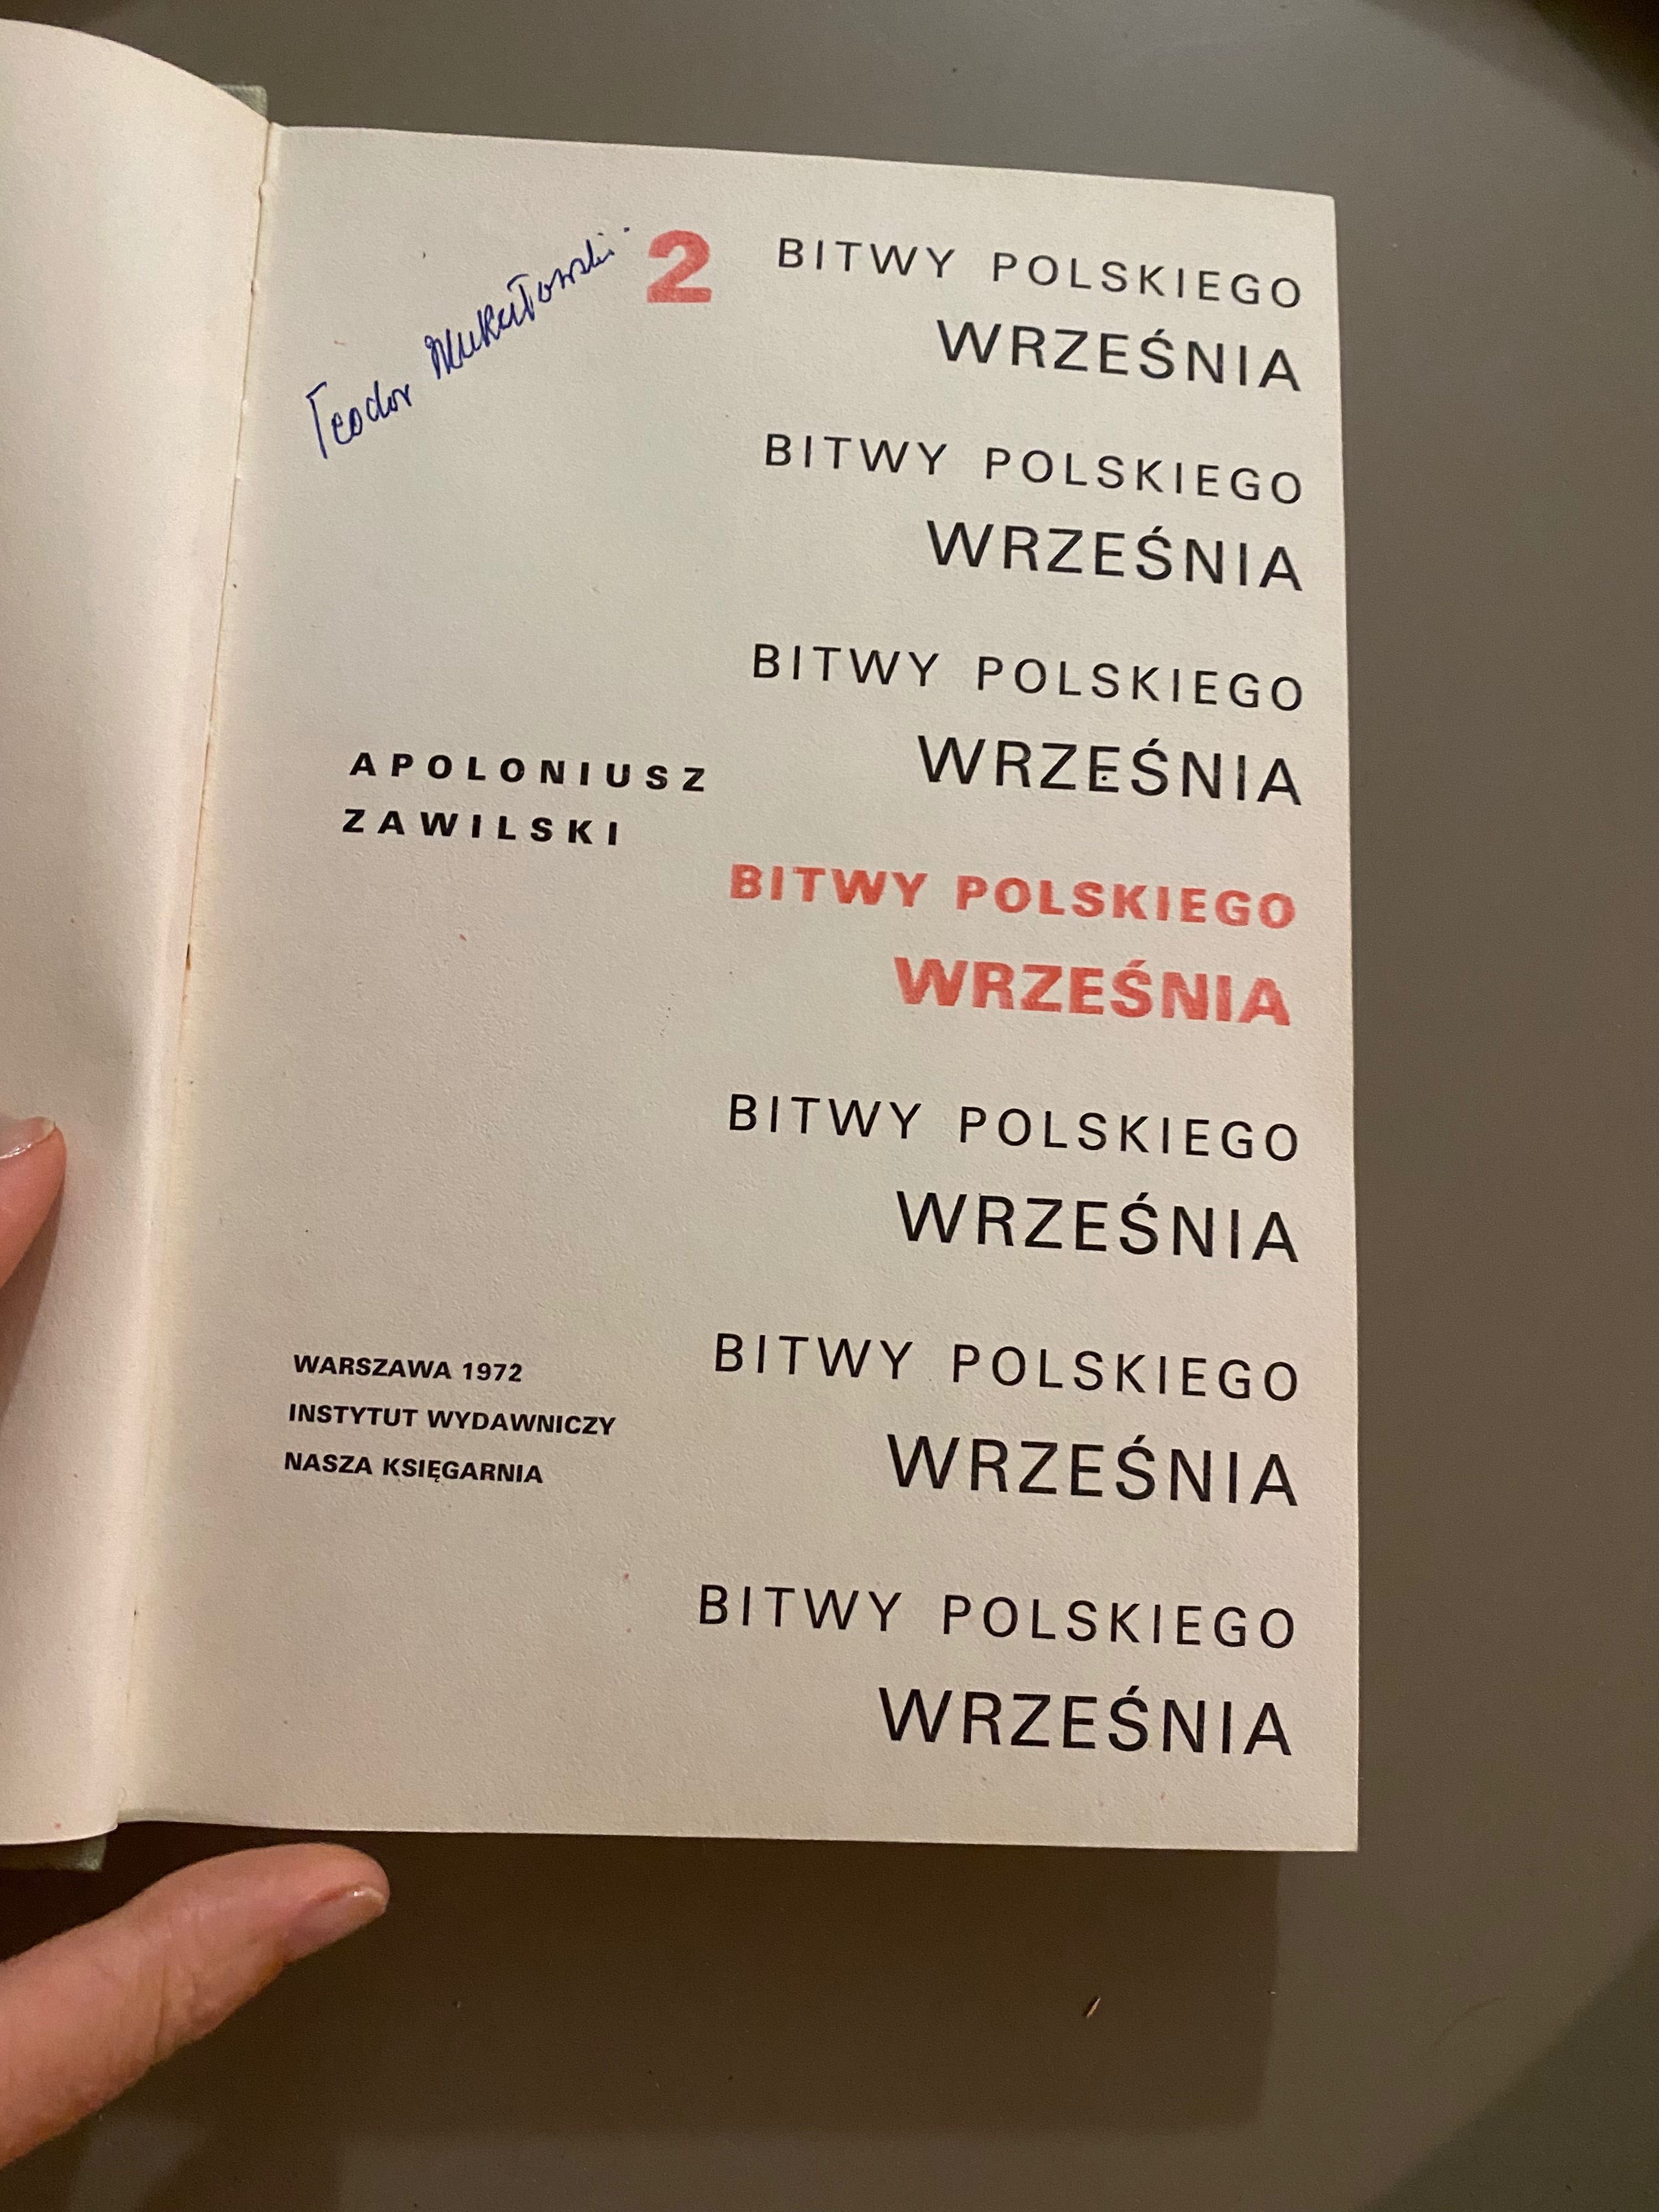 „Bitwy polskiego września” Apoloniusz Zawilski